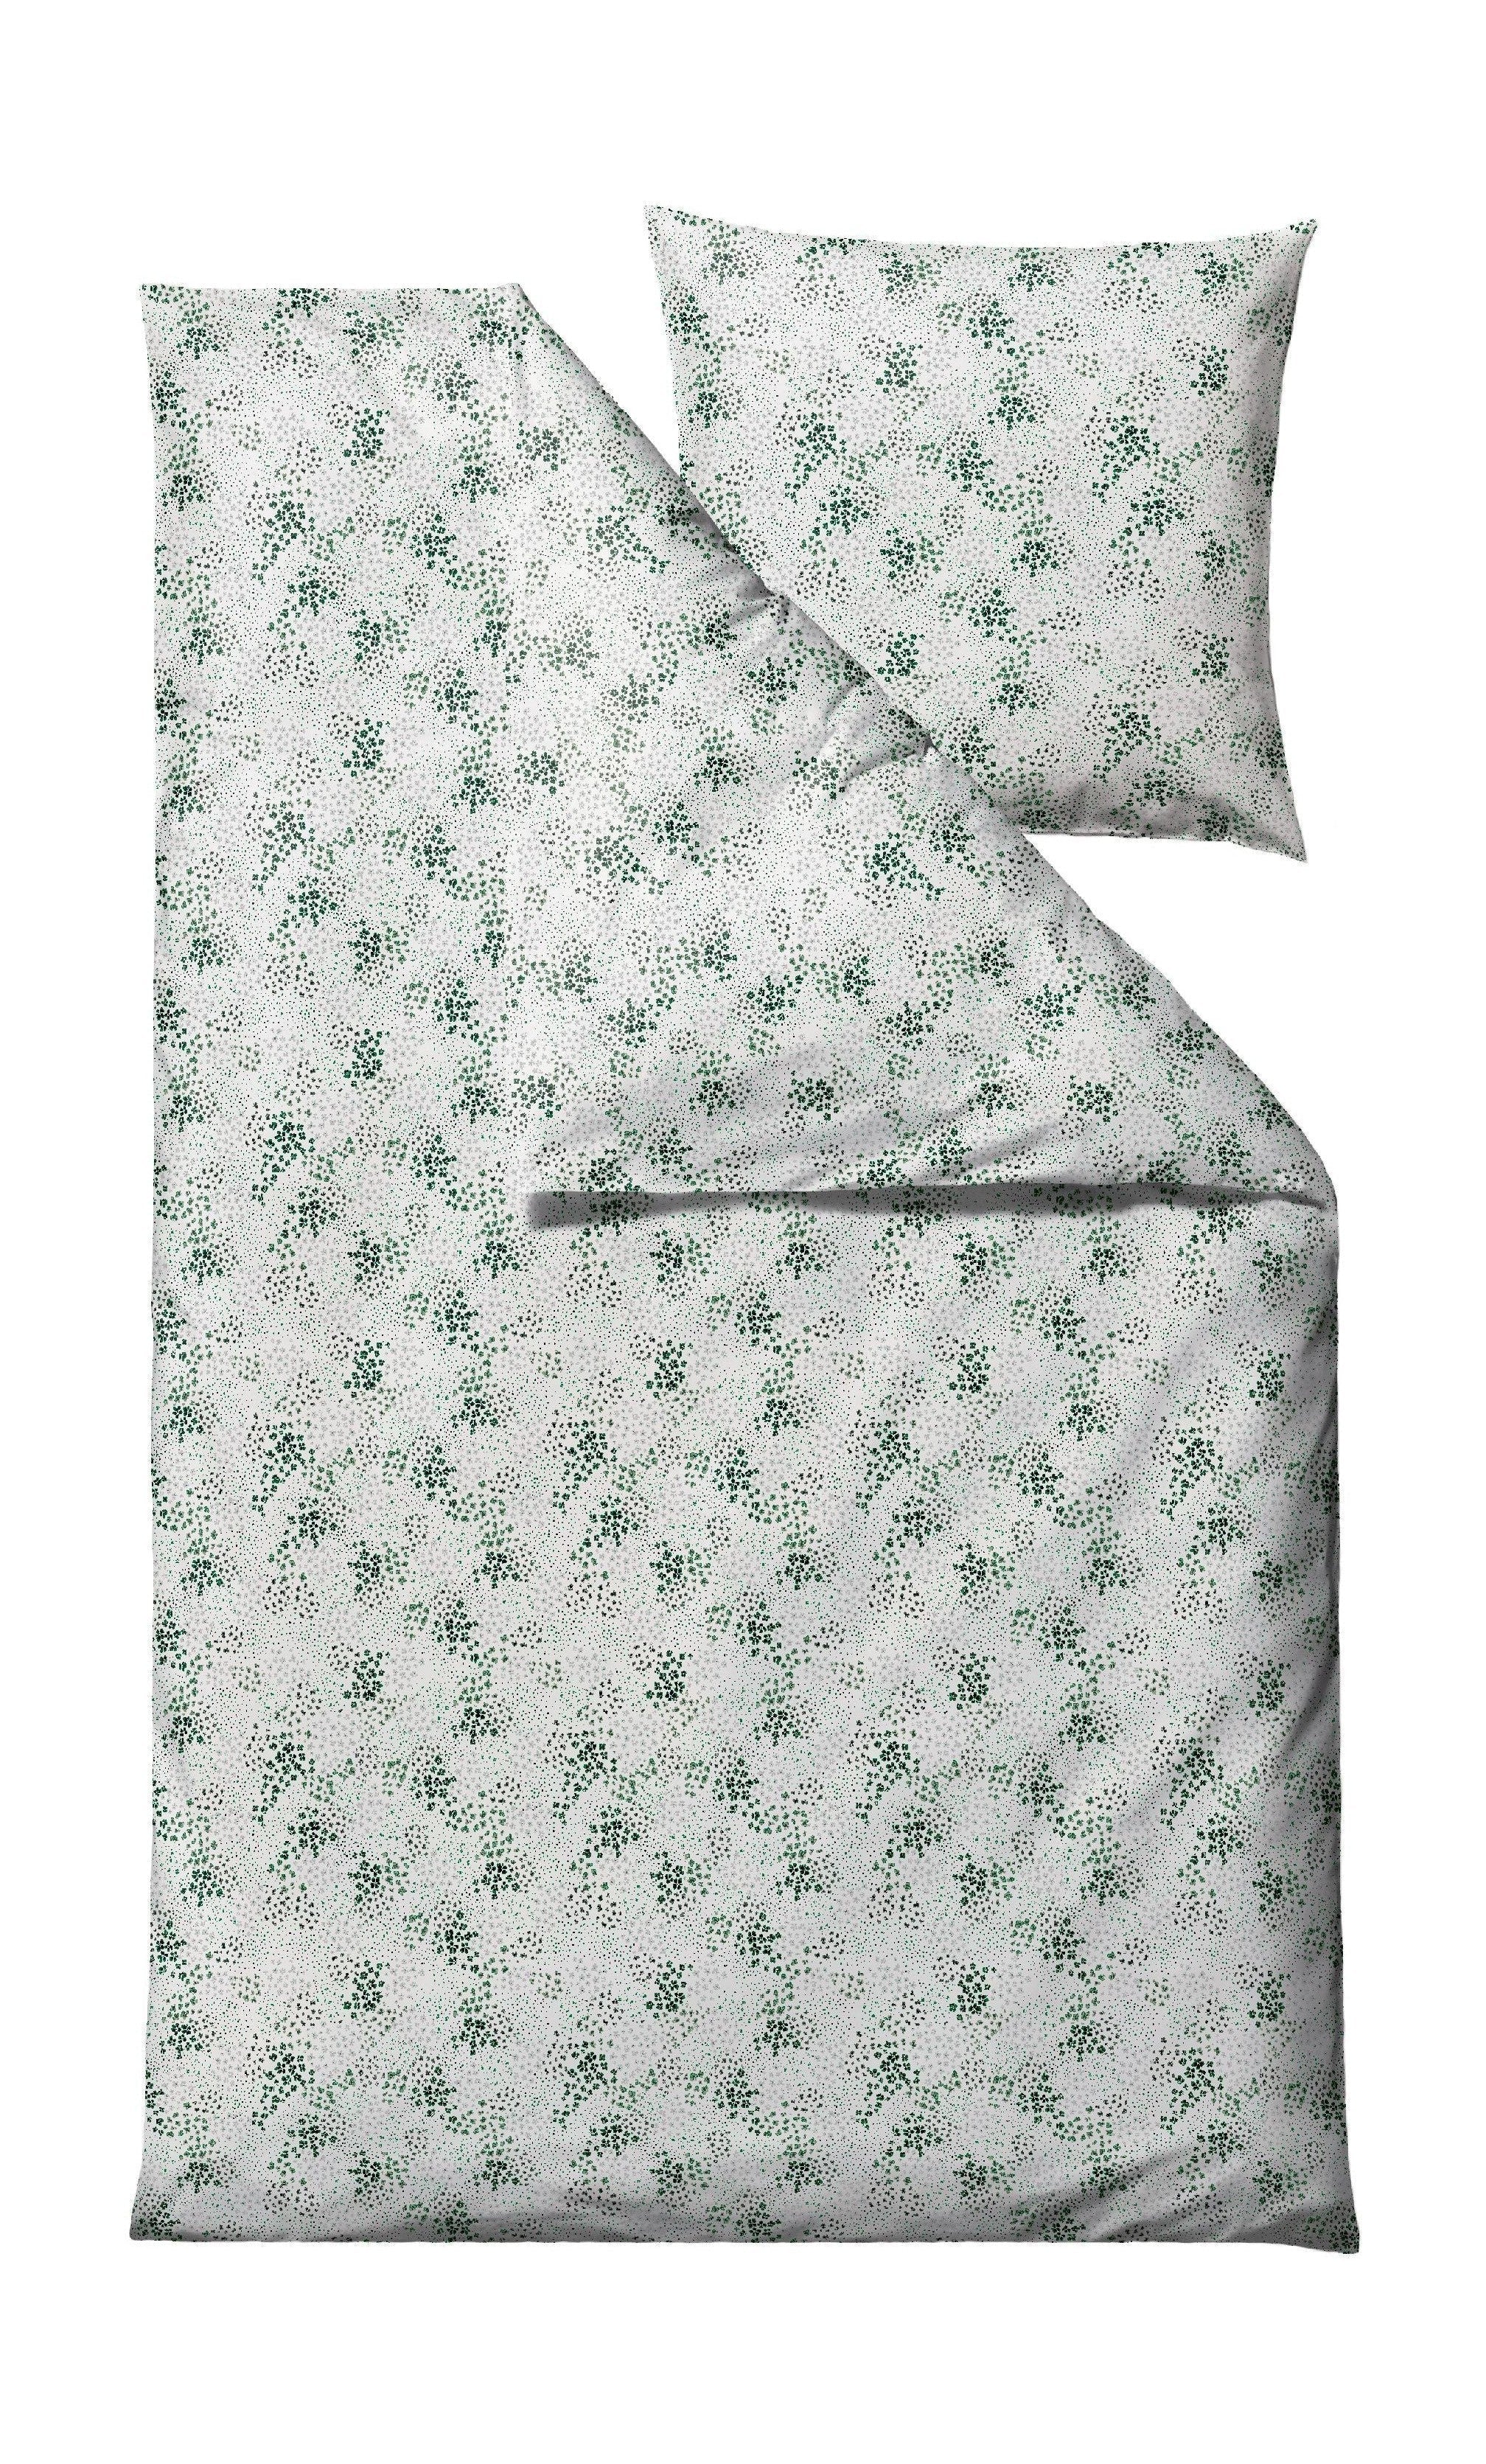 Södahl Viola Bett Leinen 140 x 200 cm, grün